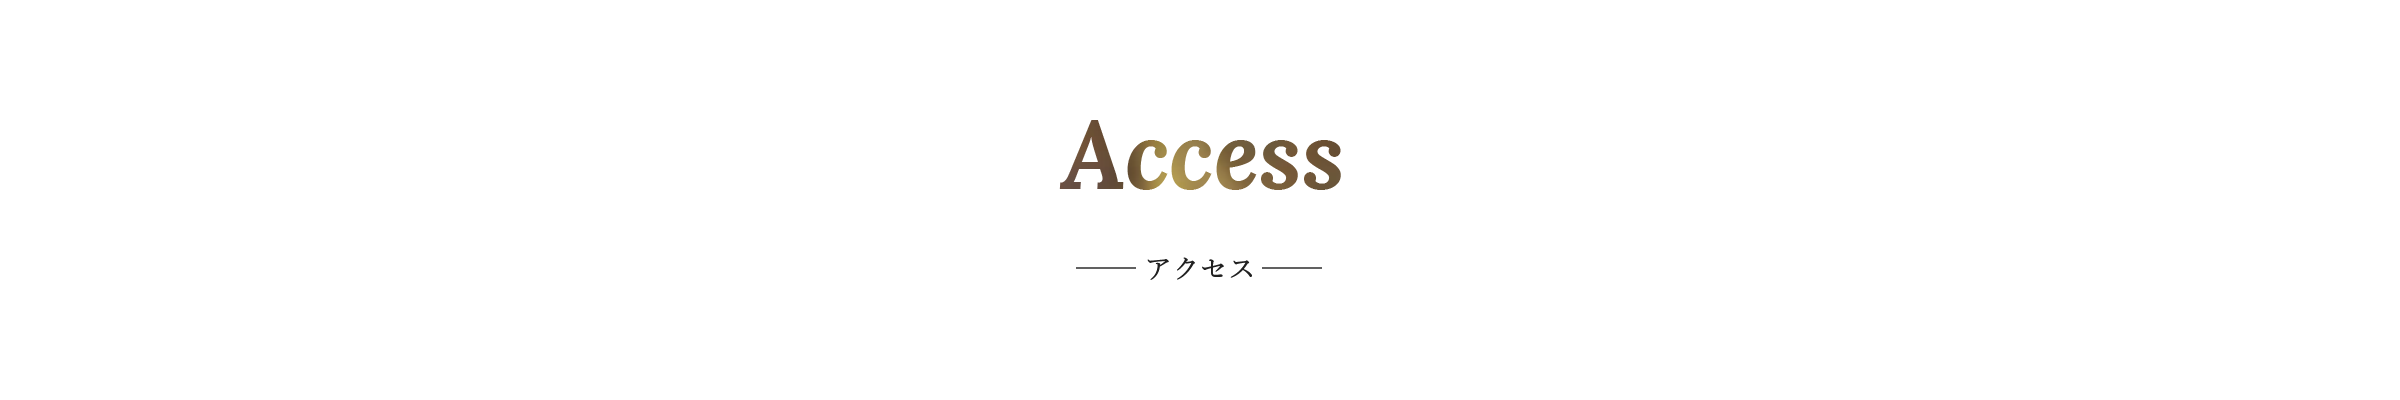 Access-アクセス-